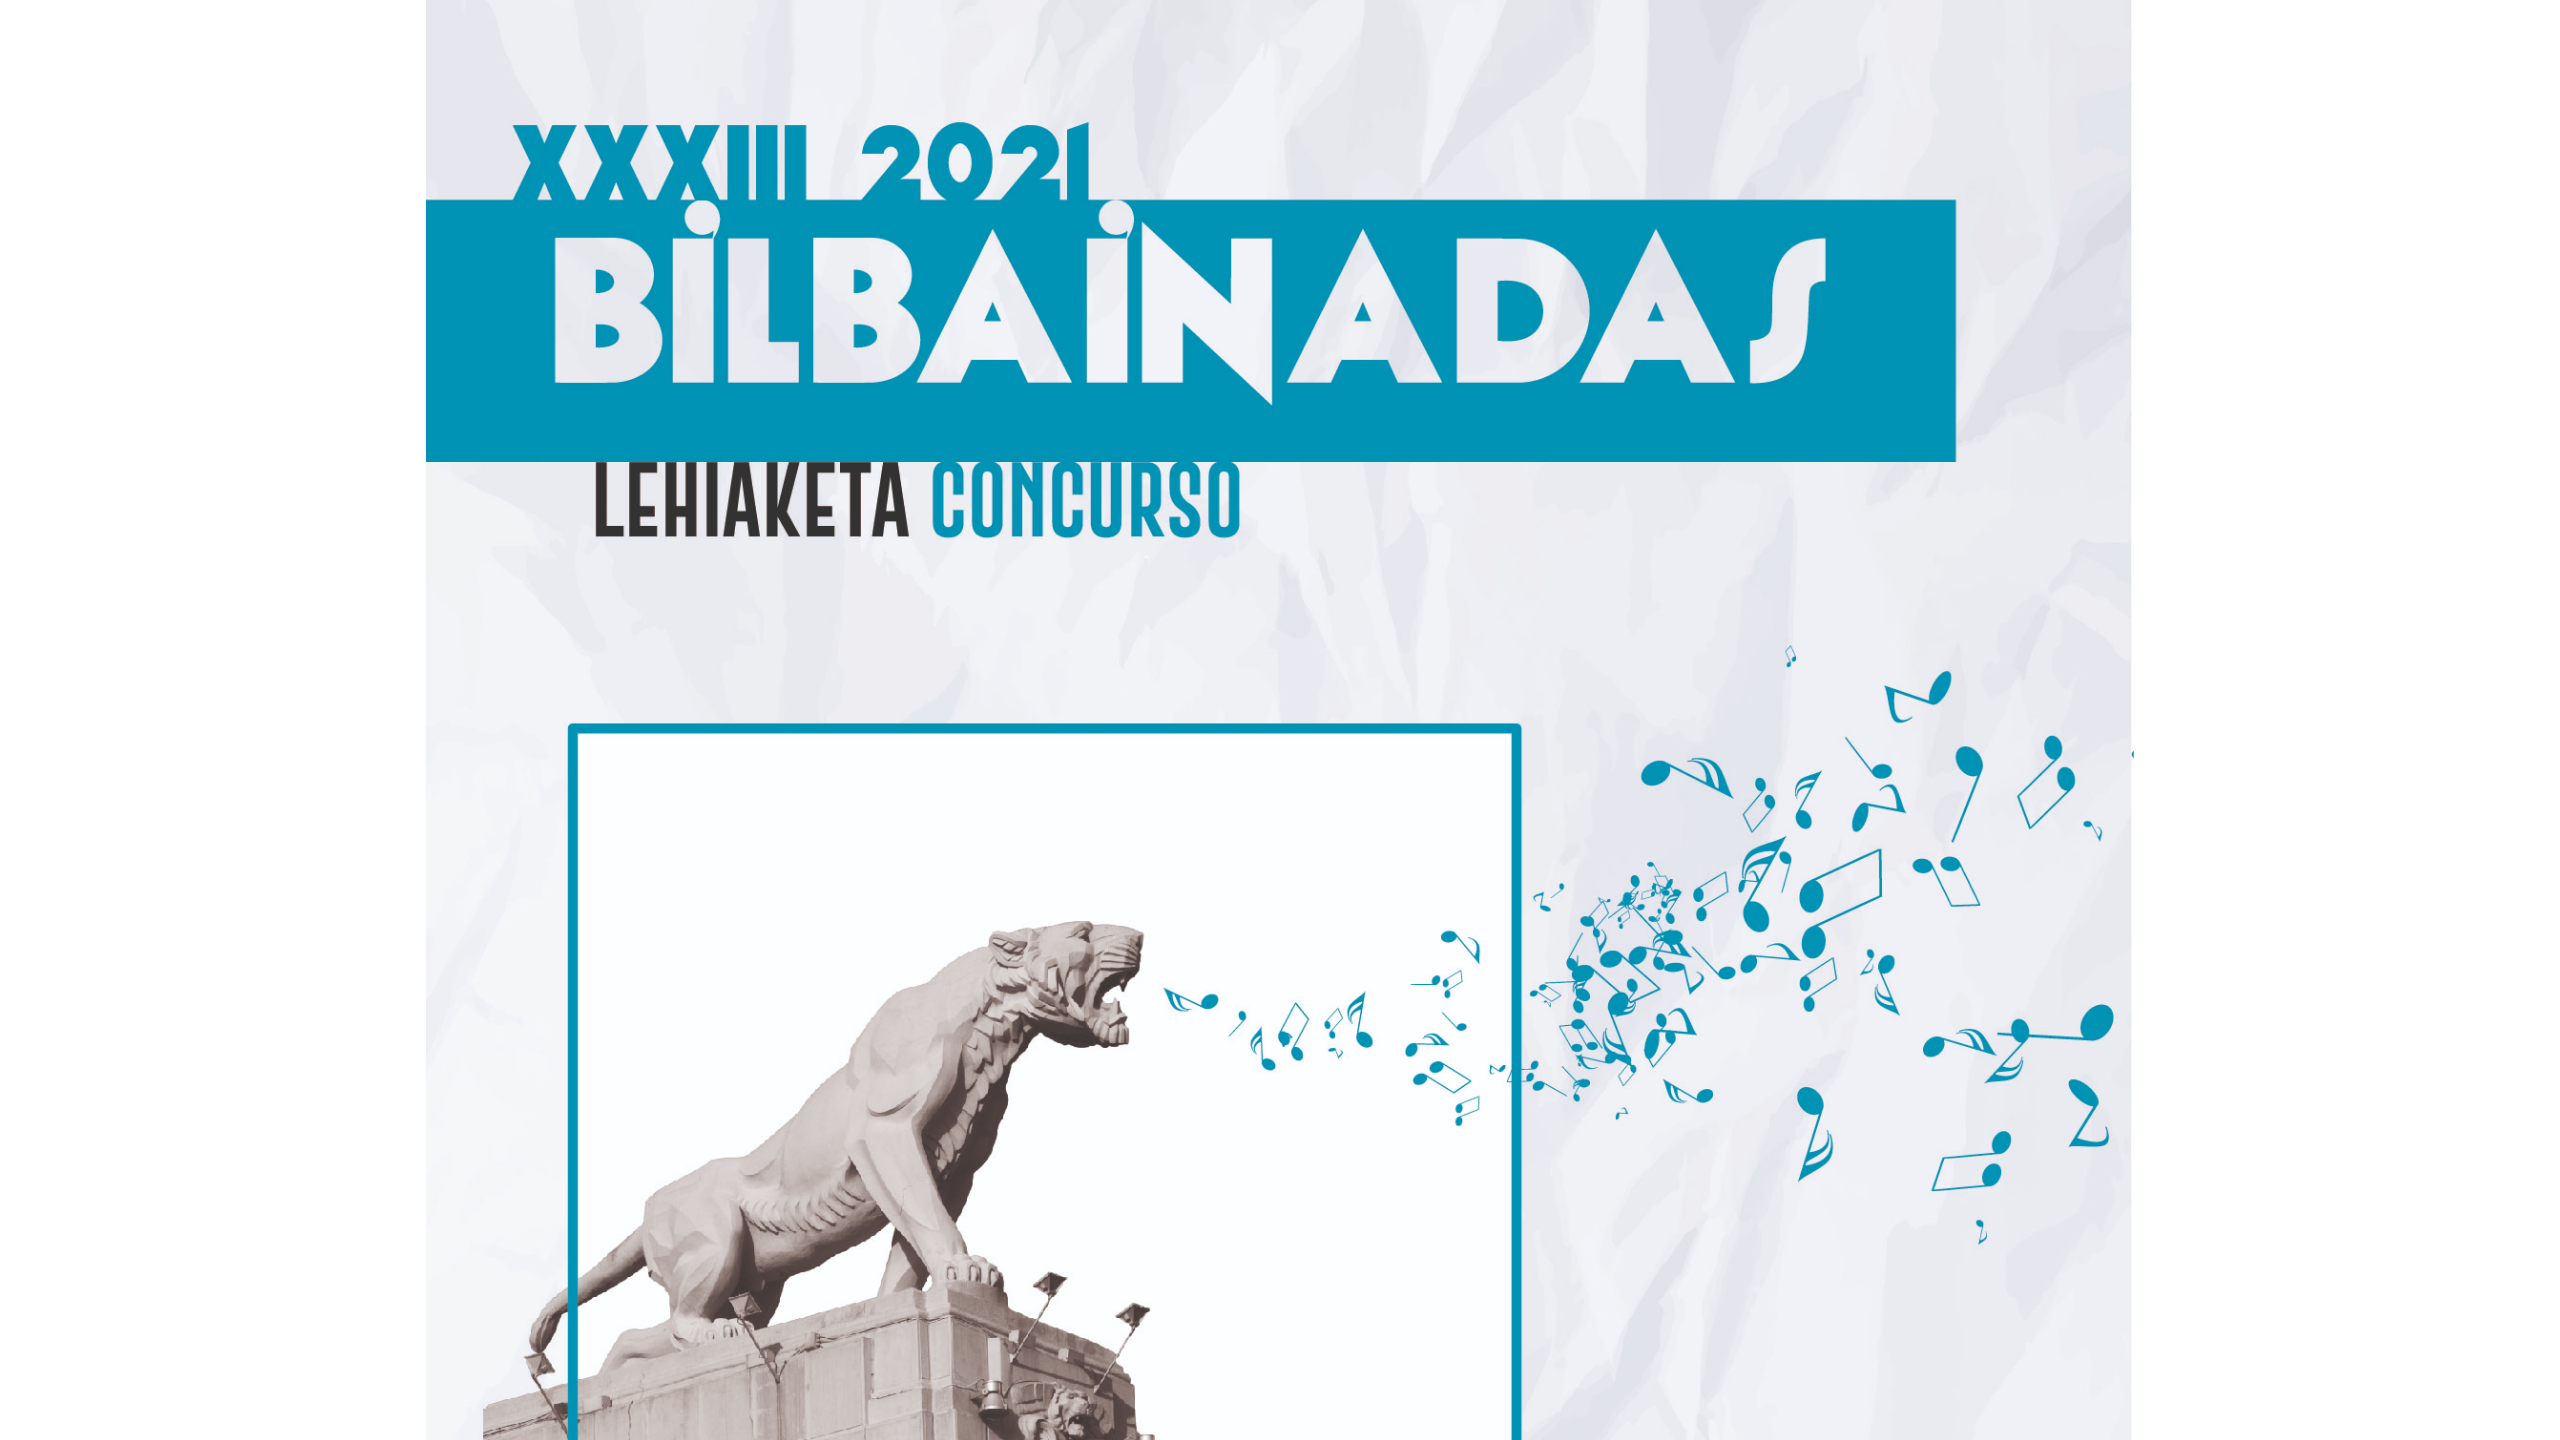 El Ayuntamiento abre la convocatoria de su XXXIII concurso de bilbainadas